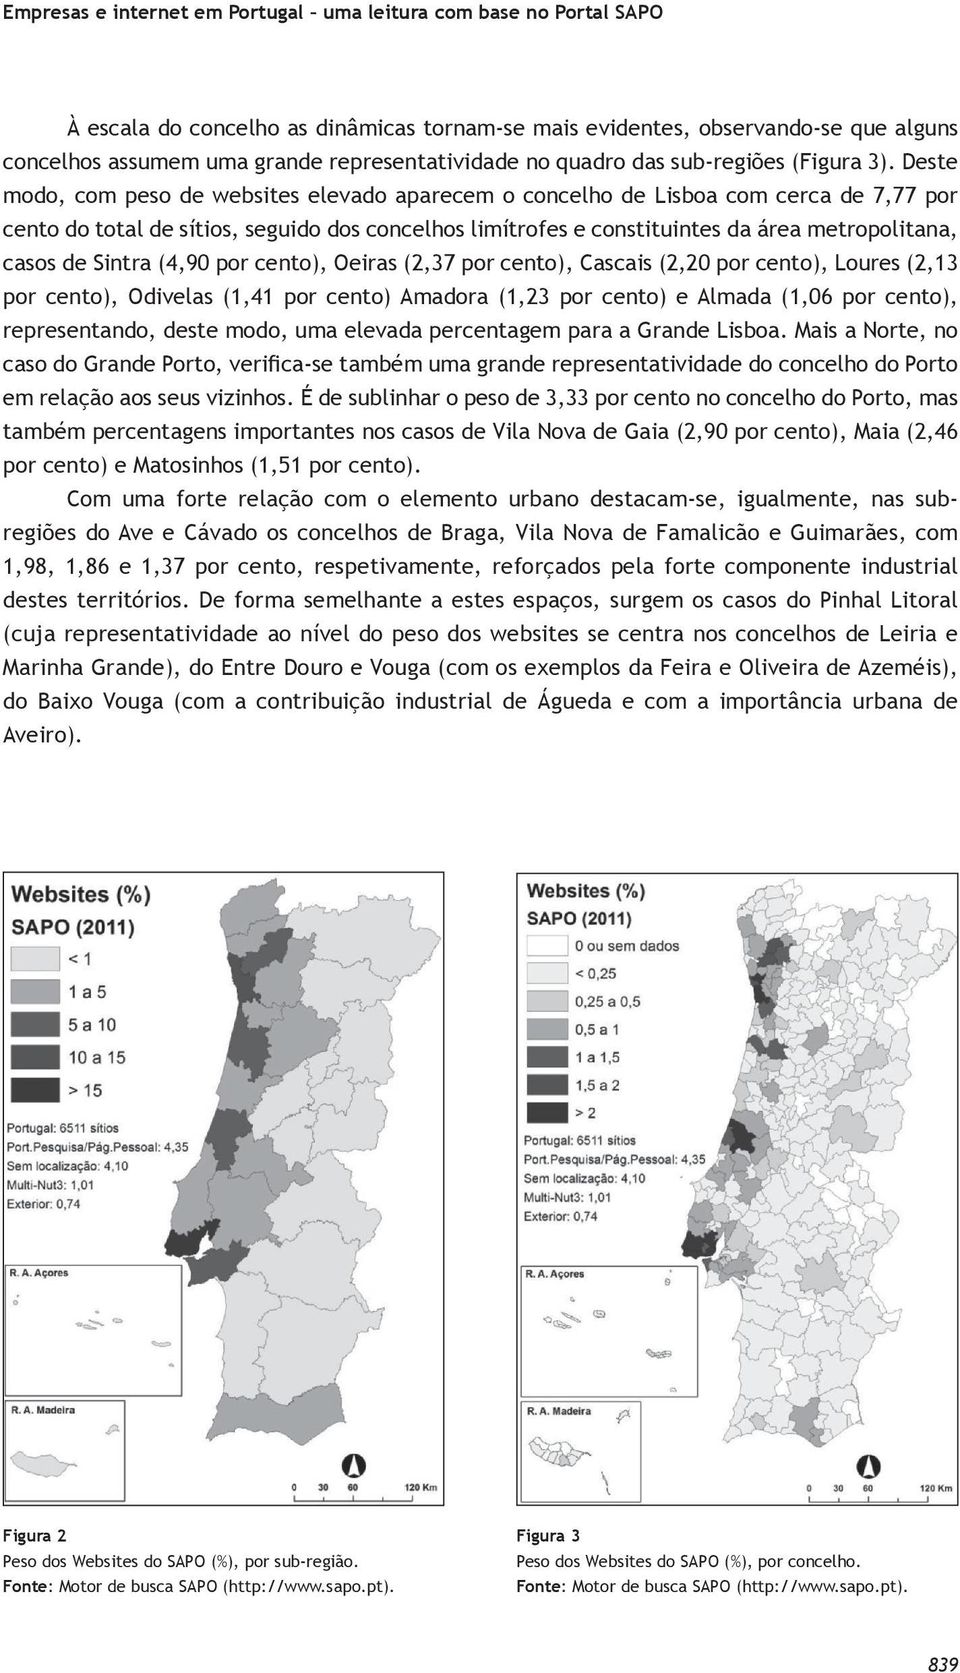 Deste modo, com peso de websites elevado aparecem o concelho de Lisboa com cerca de 7,77 por cento do total de sítios, seguido dos concelhos limítrofes e constituintes da área metropolitana, casos de